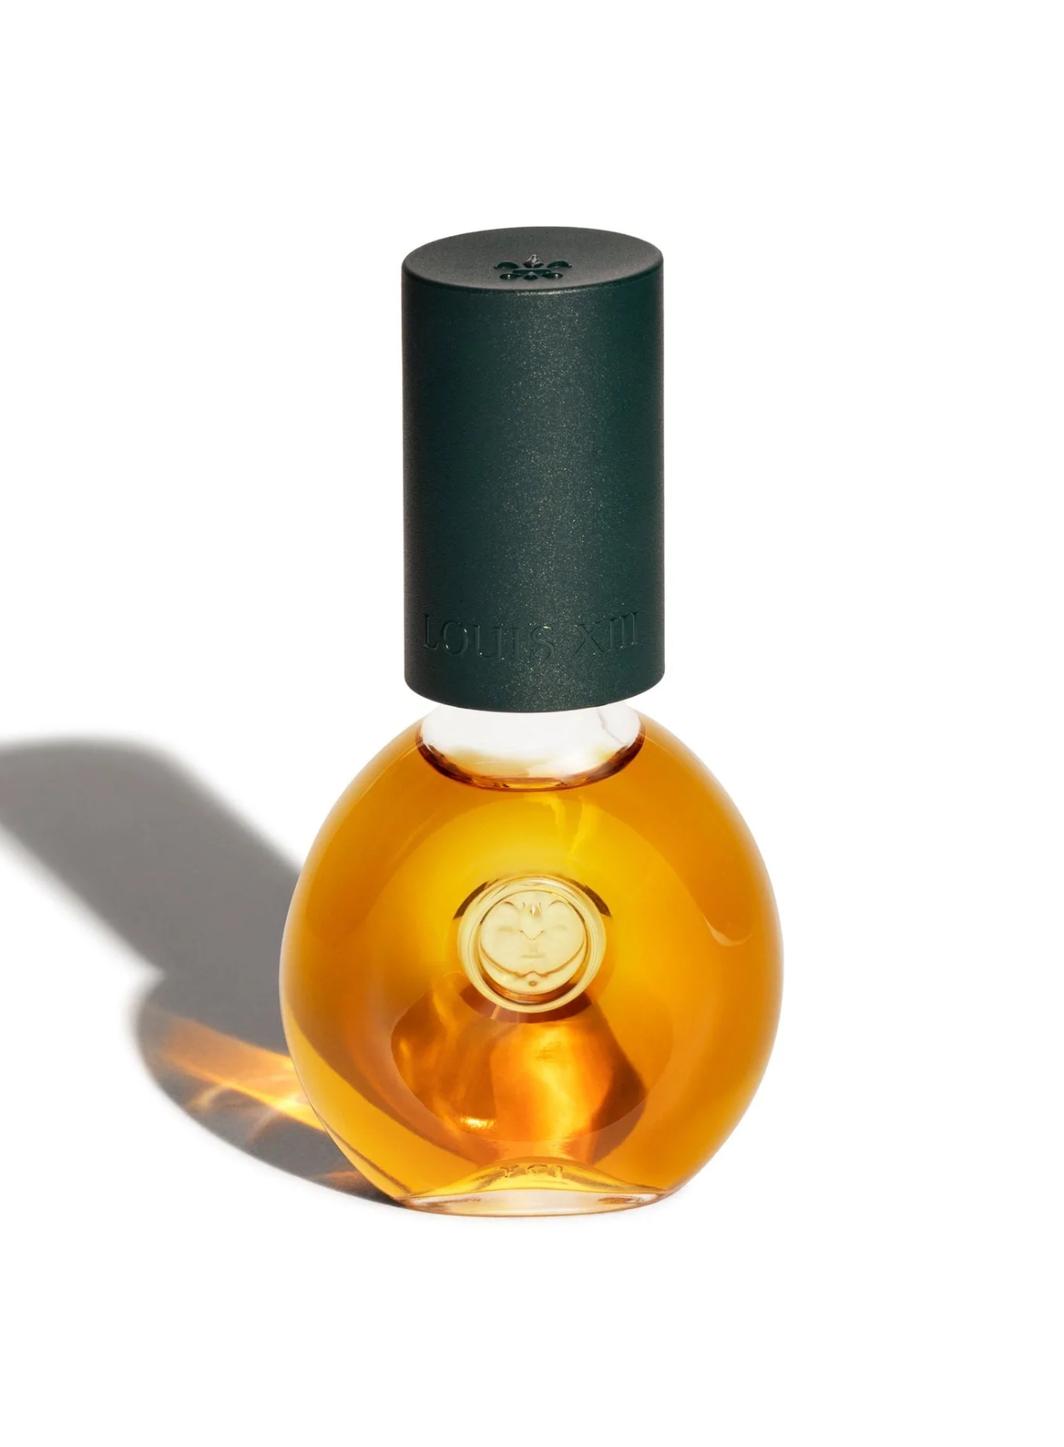 Le cognac Louis XIII à la conquête des millenials avec “The Drop”, des mini-fioles nomades.